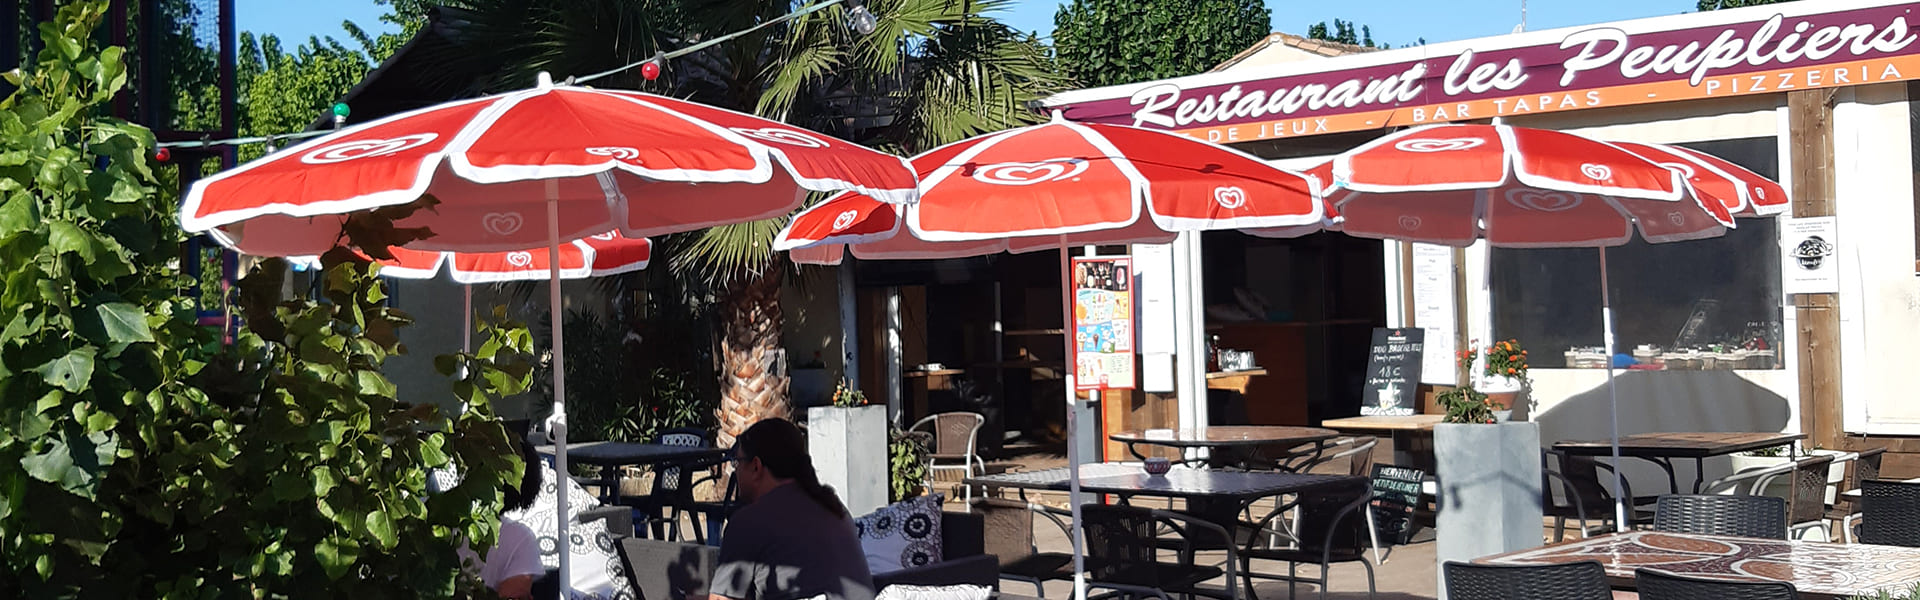 El restaurante del camping Les Peupliers, en Colombiers, cerca de Béziers